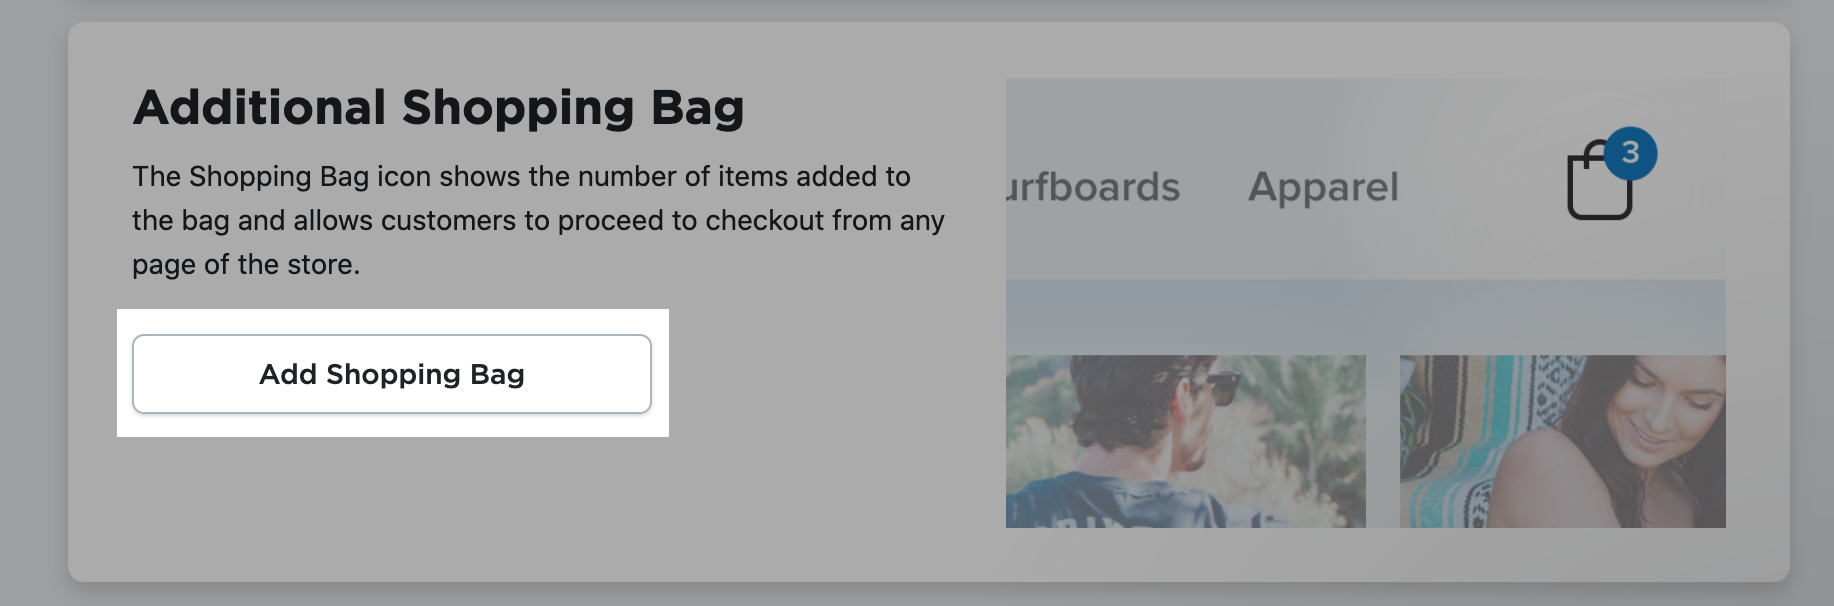 adding_shopping_bag.png